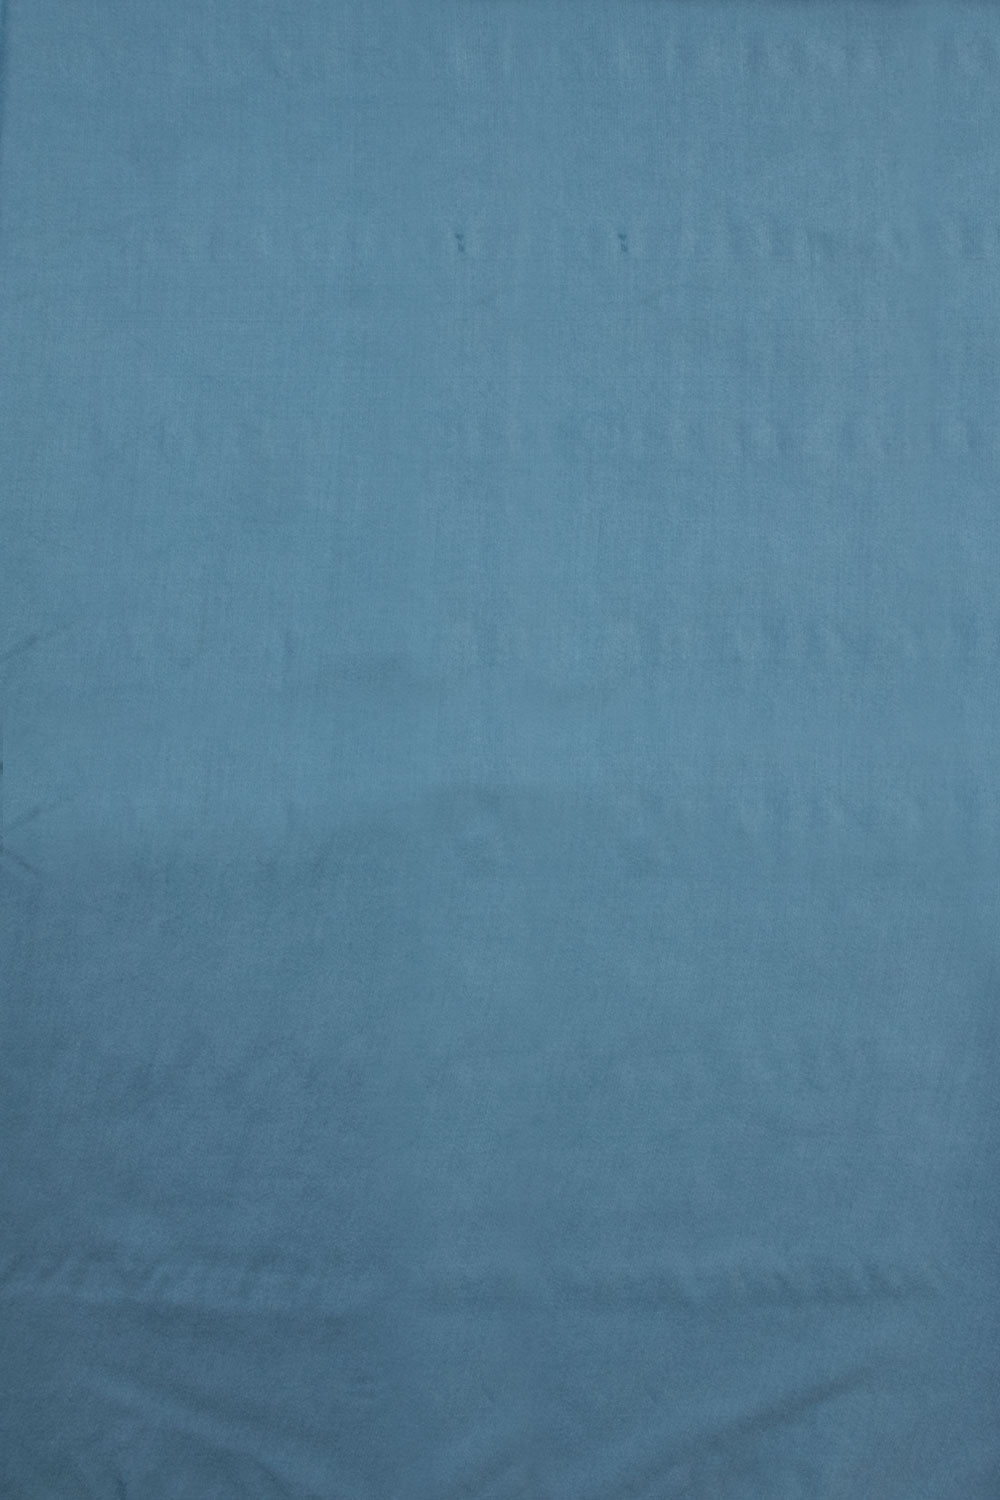 Blue 3-piece Banarasi Silk Salwar Suit Material 10070357